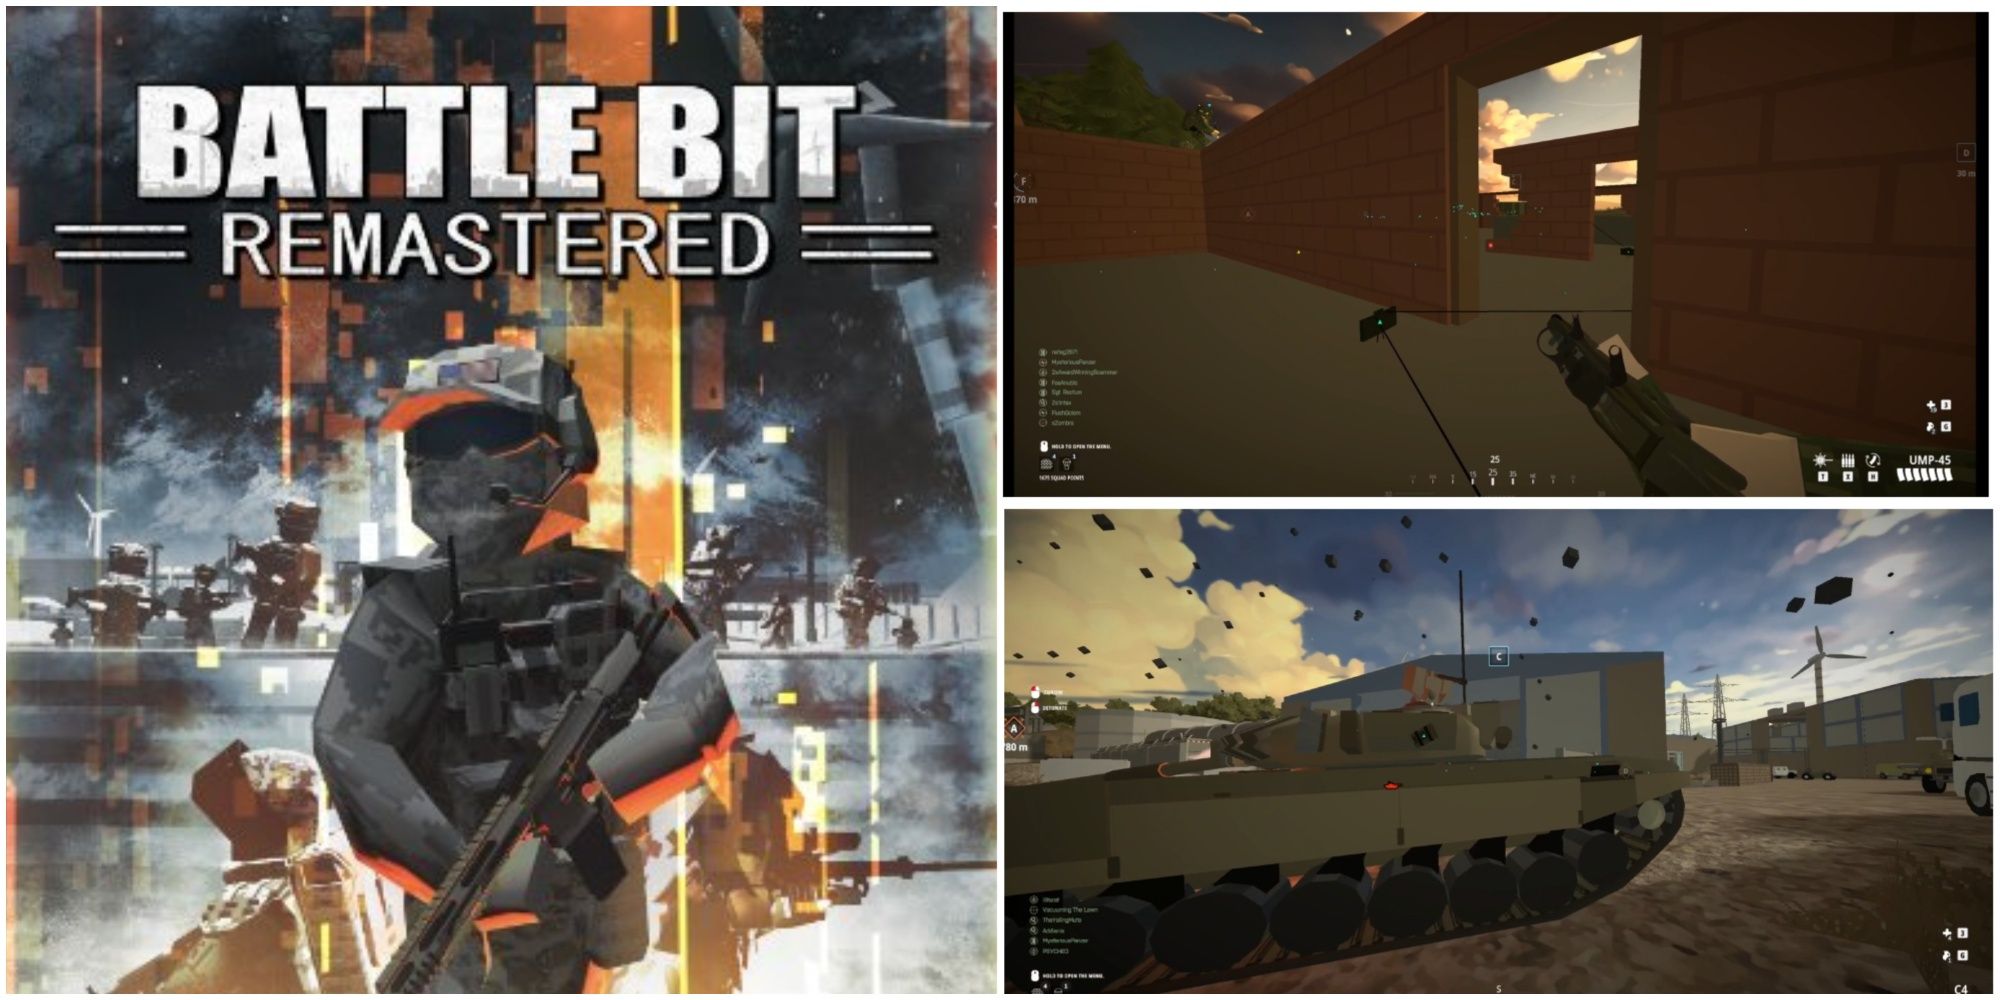 BattleBit Remastered: How Gadgets Work